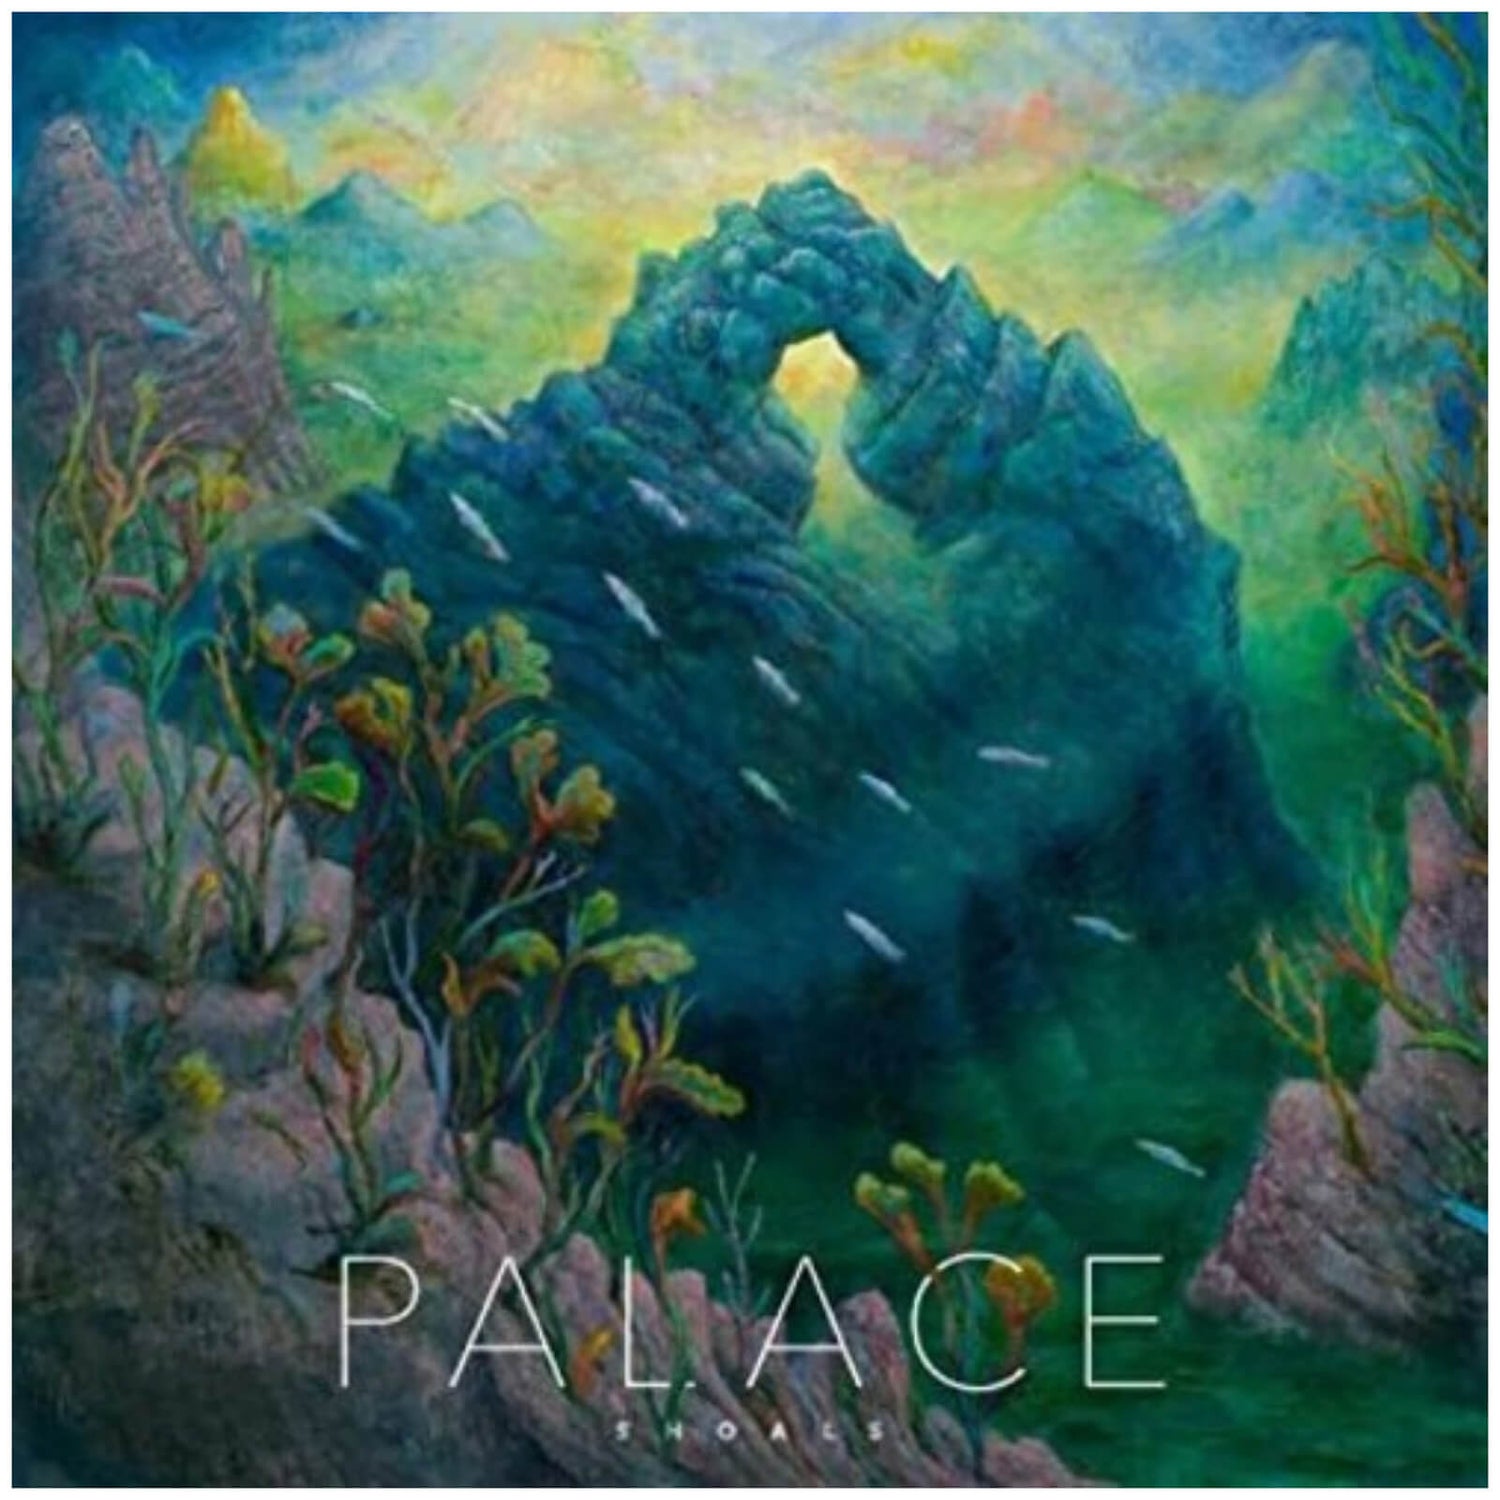 Palace - Shoals Vinyl